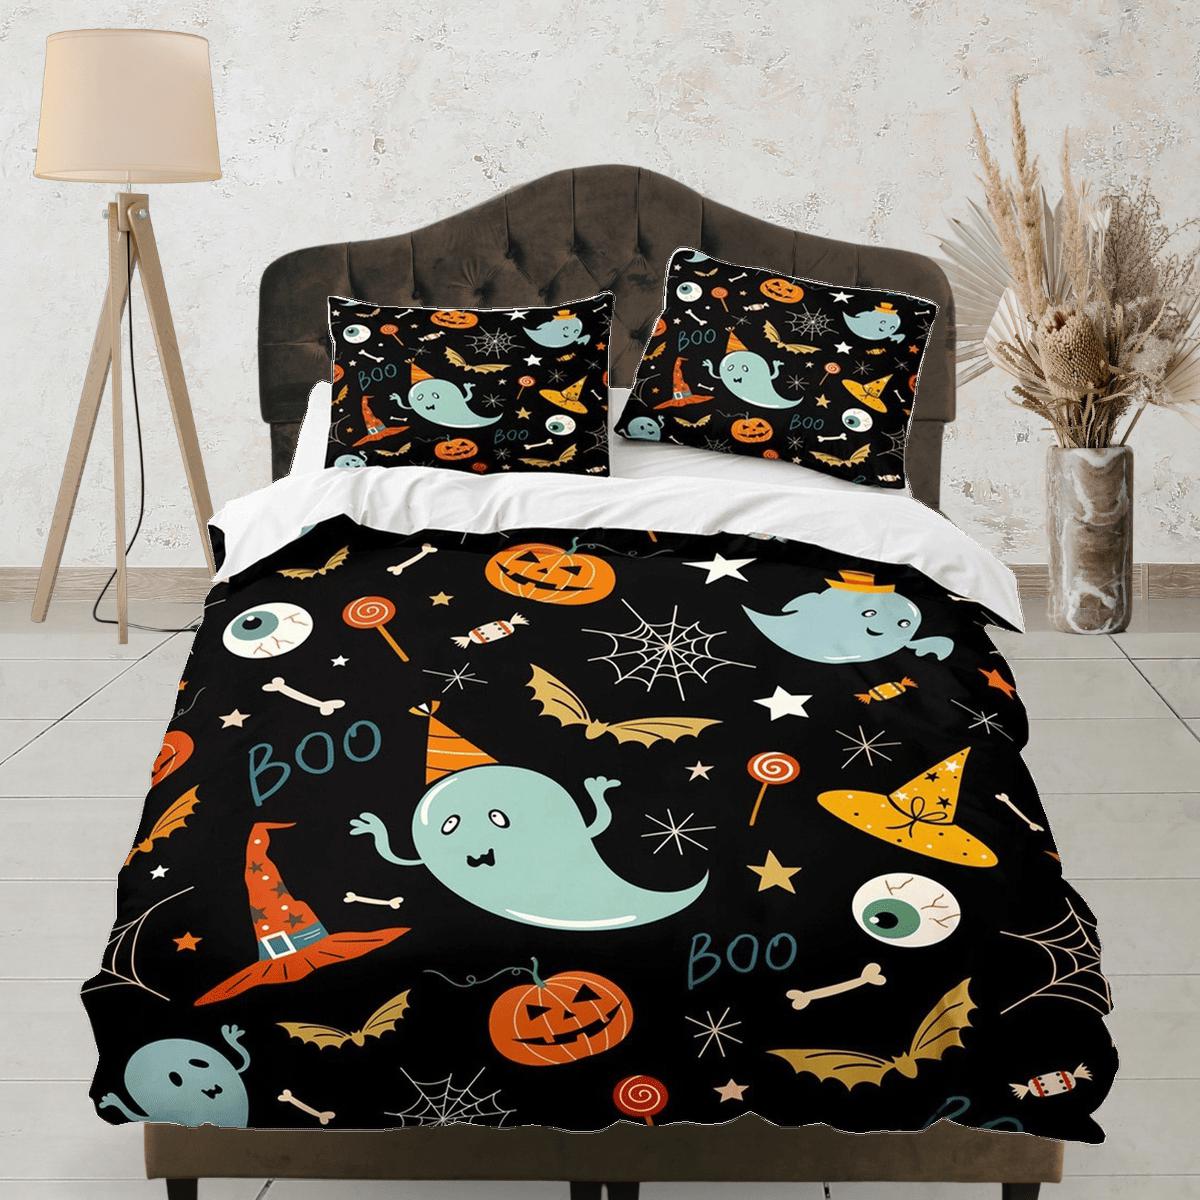 daintyduvet 90s nostalgia halloween bedding & pillowcase, black duvet cover set dorm bedding, retro halloween, nursery toddler bedding, halloween gift